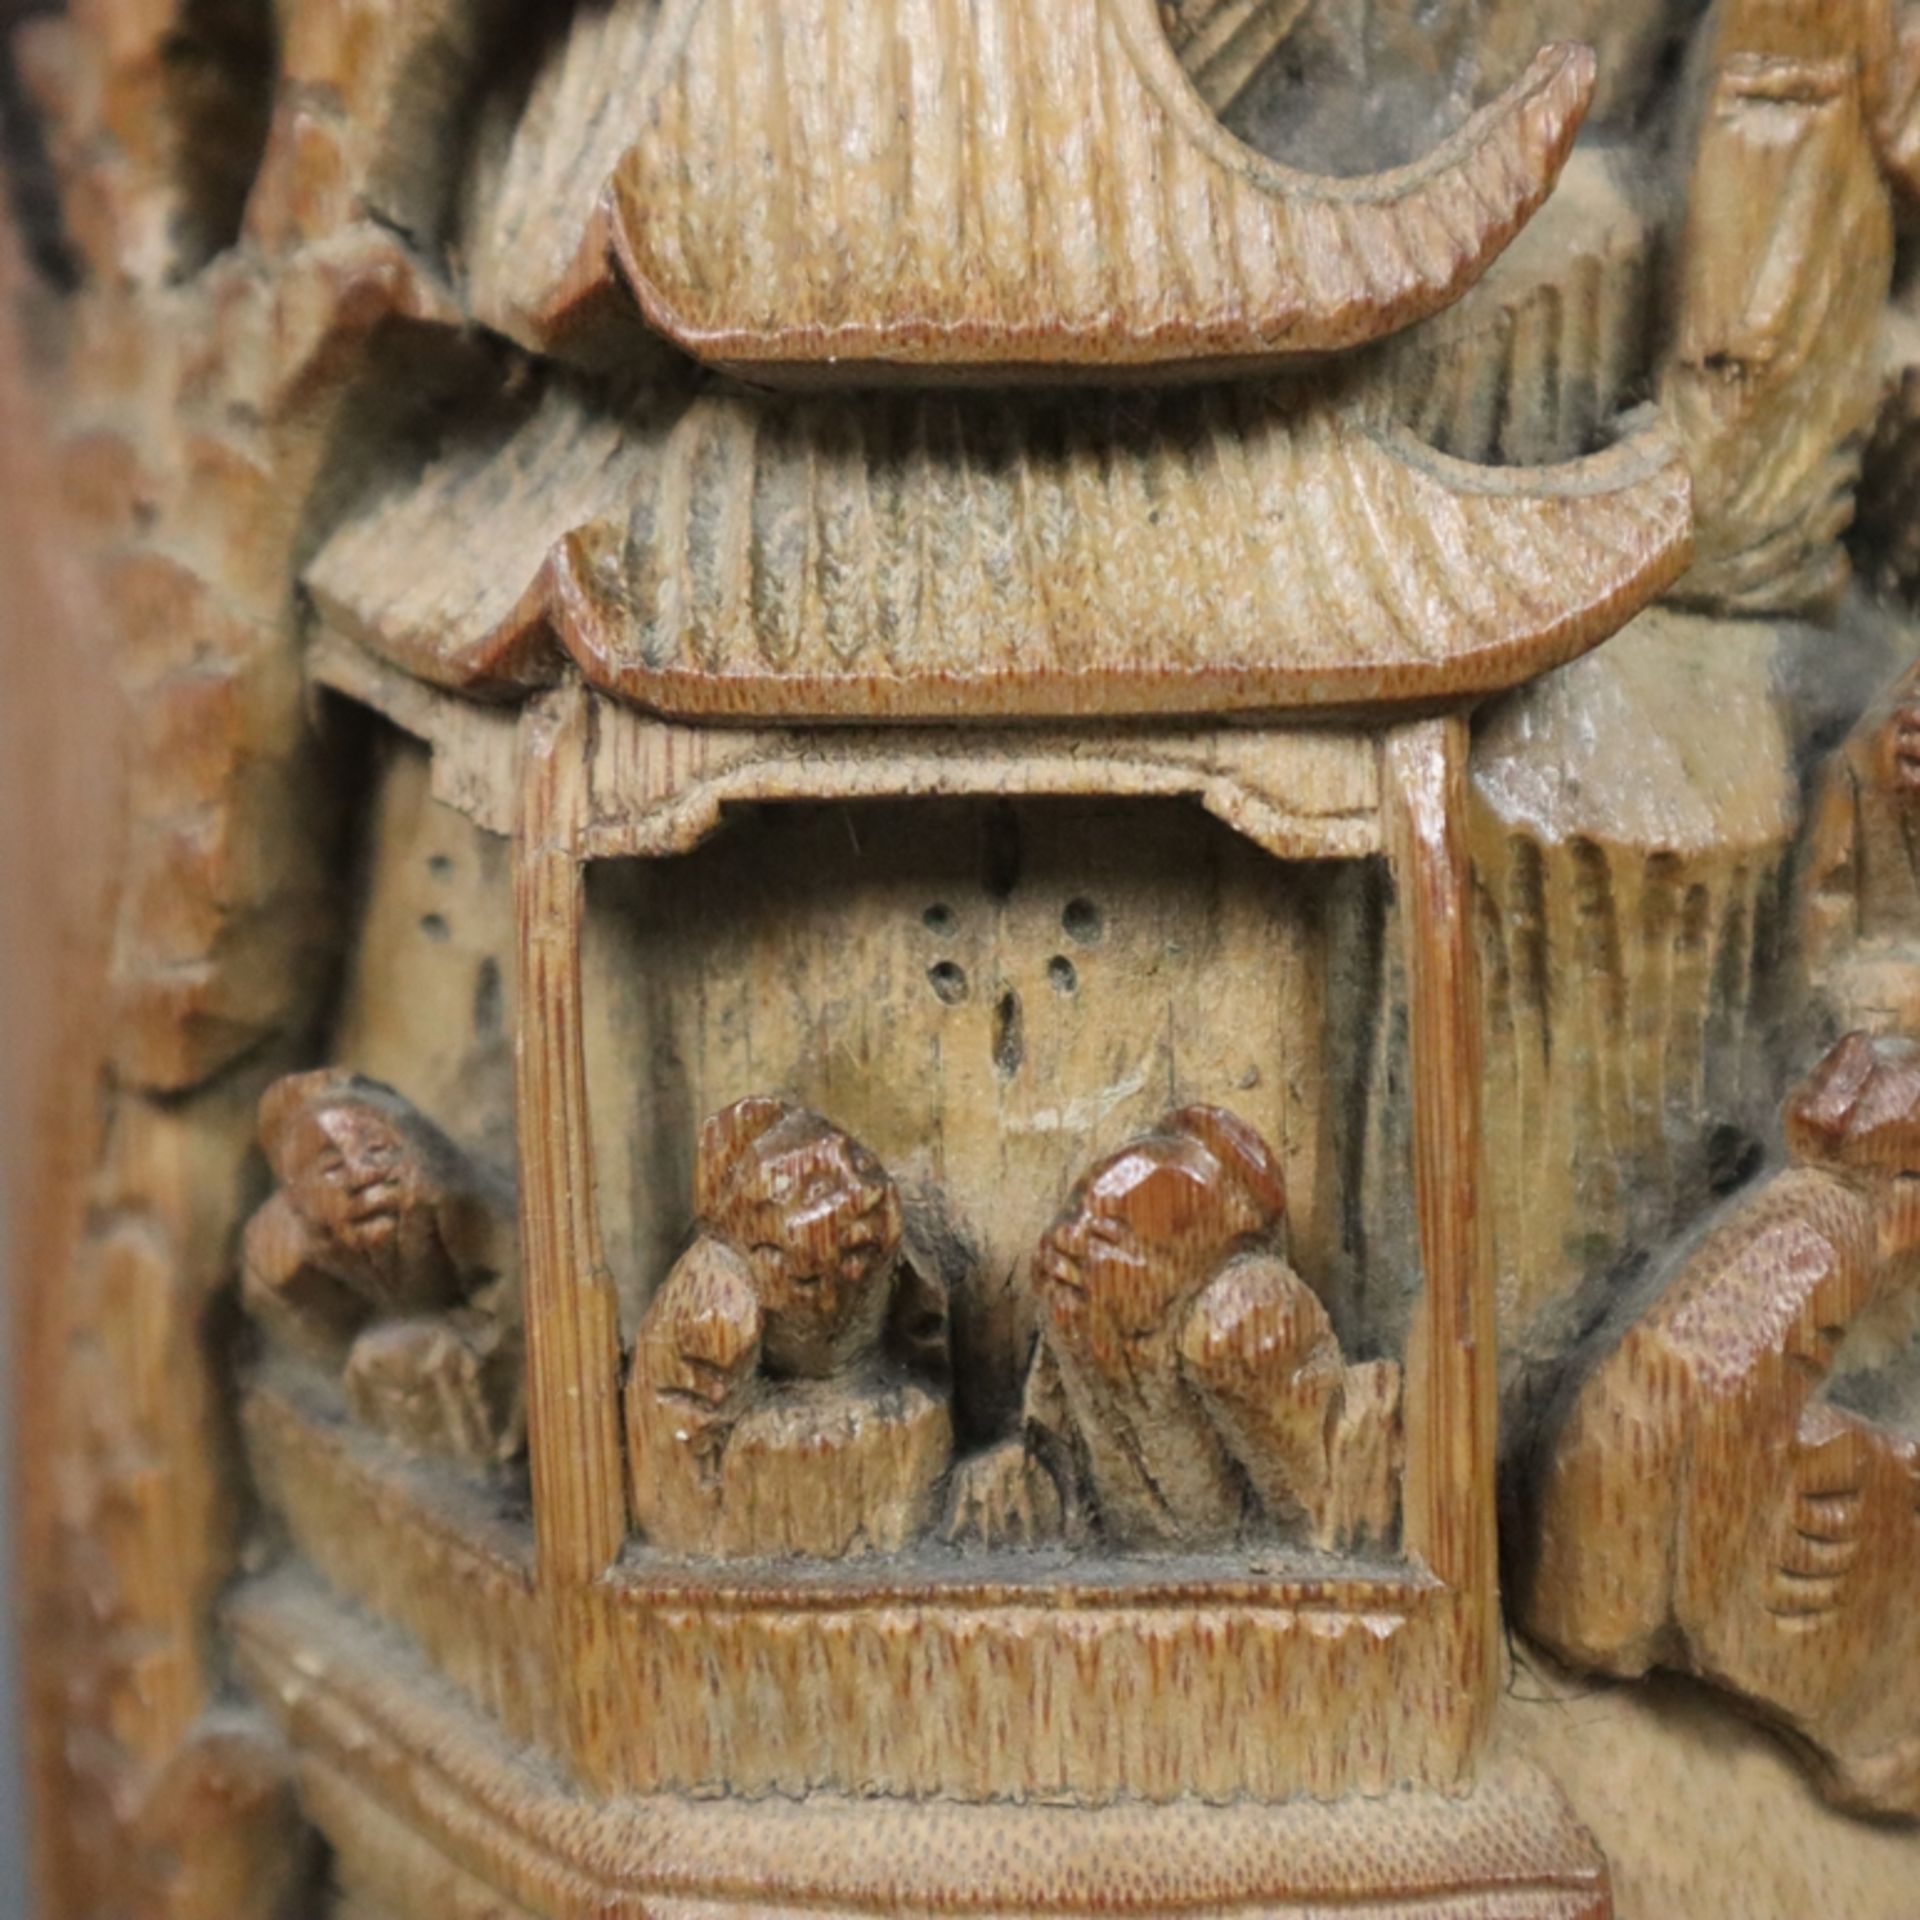 Ein Paar große Pinselhalter - China 1. Hälfte 20. Jh., Bambus, zylindrische Form, beschnitzt, schau - Image 4 of 10